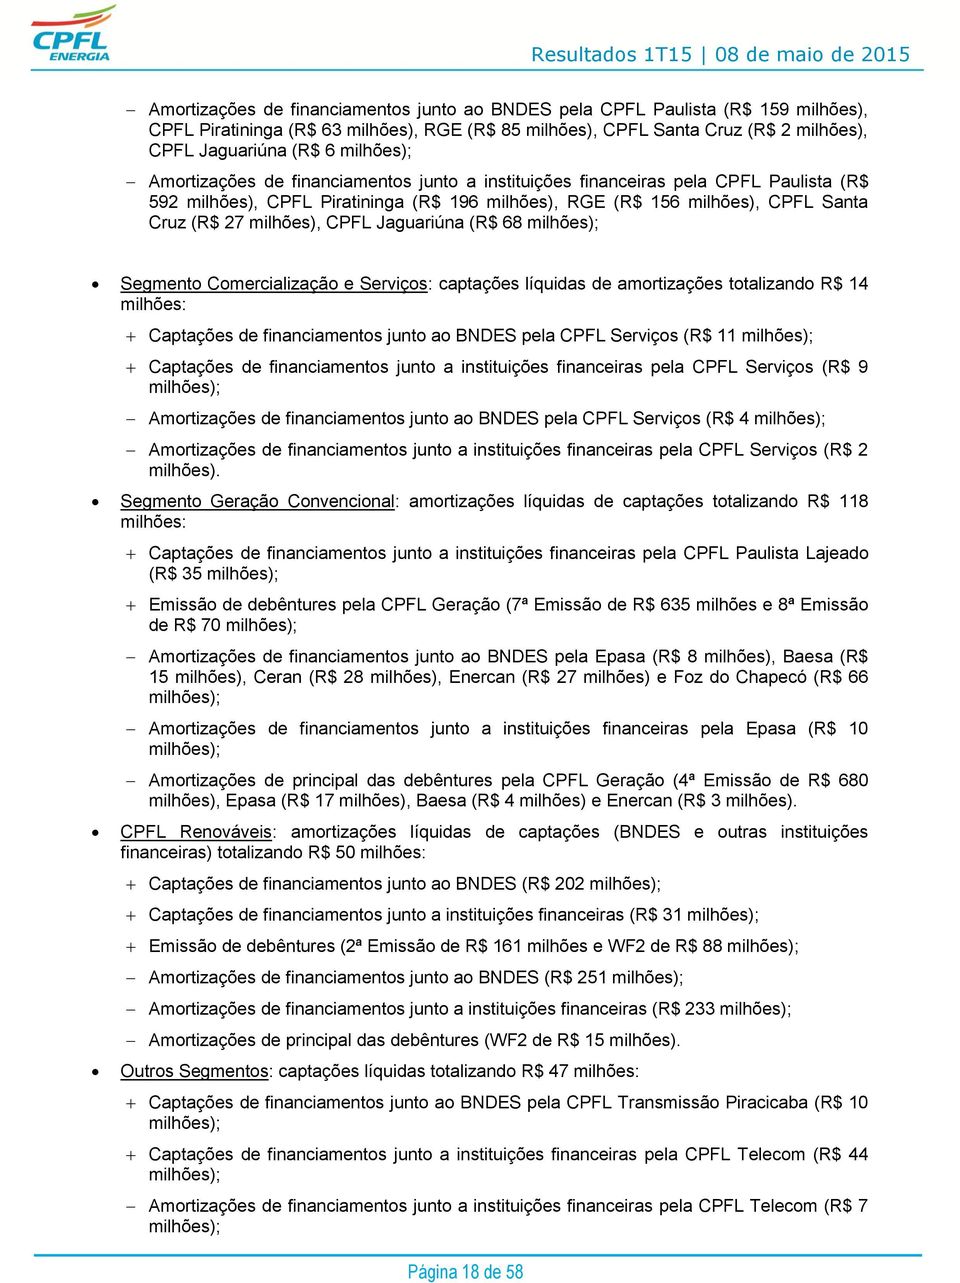 milhões), CPFL Jaguariúna (R$ 68 milhões); Segmento Comercialização e Serviços: captações líquidas de amortizações totalizando R$ 14 milhões: Captações de financiamentos junto ao BNDES pela CPFL